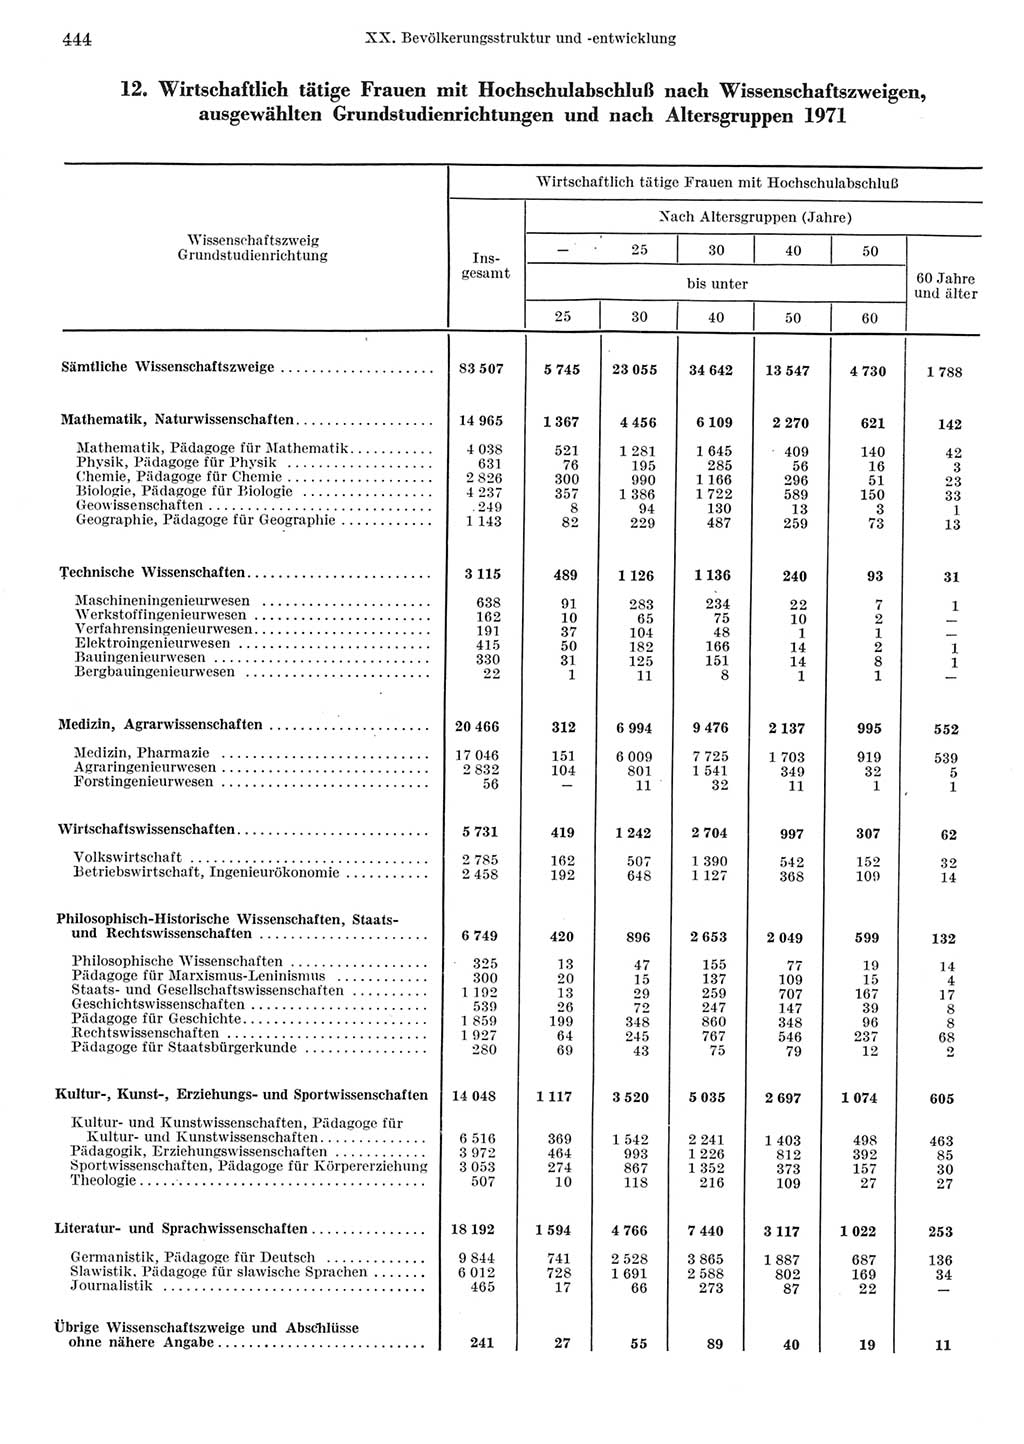 Statistisches Jahrbuch der Deutschen Demokratischen Republik (DDR) 1973, Seite 444 (Stat. Jb. DDR 1973, S. 444)